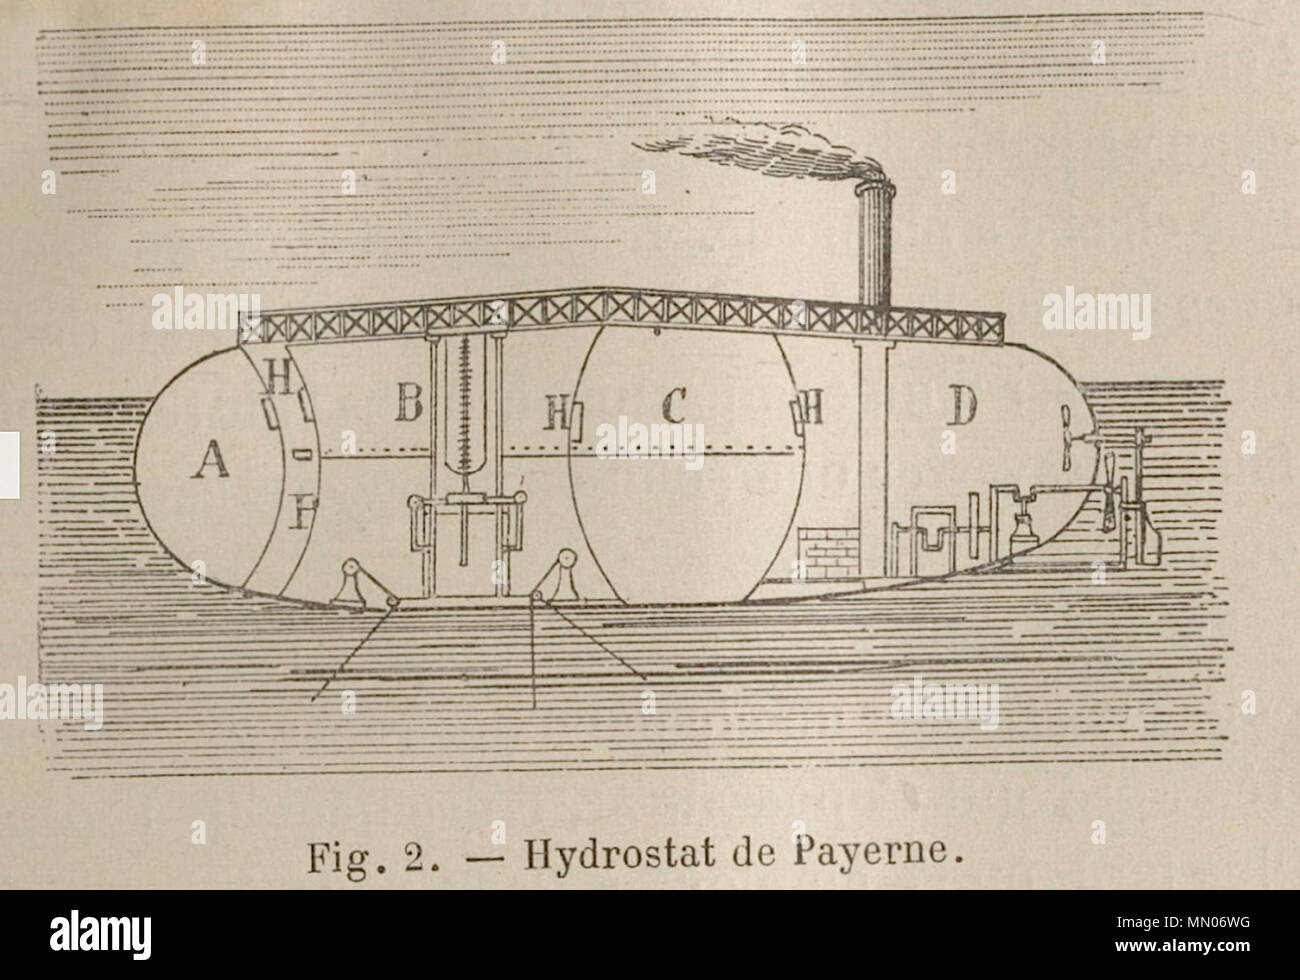 . Englisch: Belledonne", hydrostat "tauchpumpe Boot durch Prosper-Antoine Payenne 1844 erfunden, in La Navigation sous-marine von A.-M. Villon (Paris, 1891). Hydrostat de Payerne (1844). Stockfoto